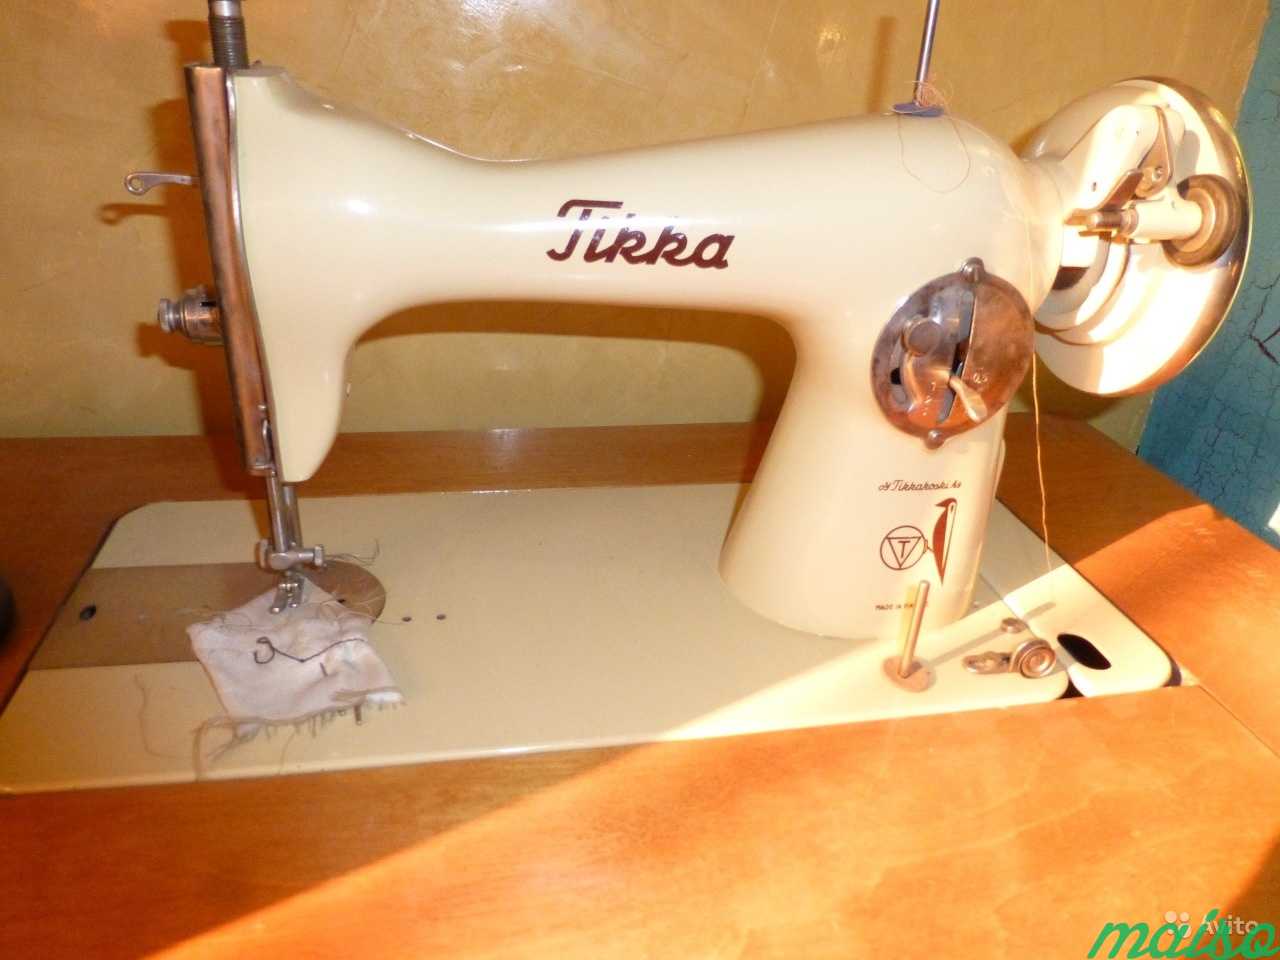 Швейная машинка Tikka в Москве. Фото 2